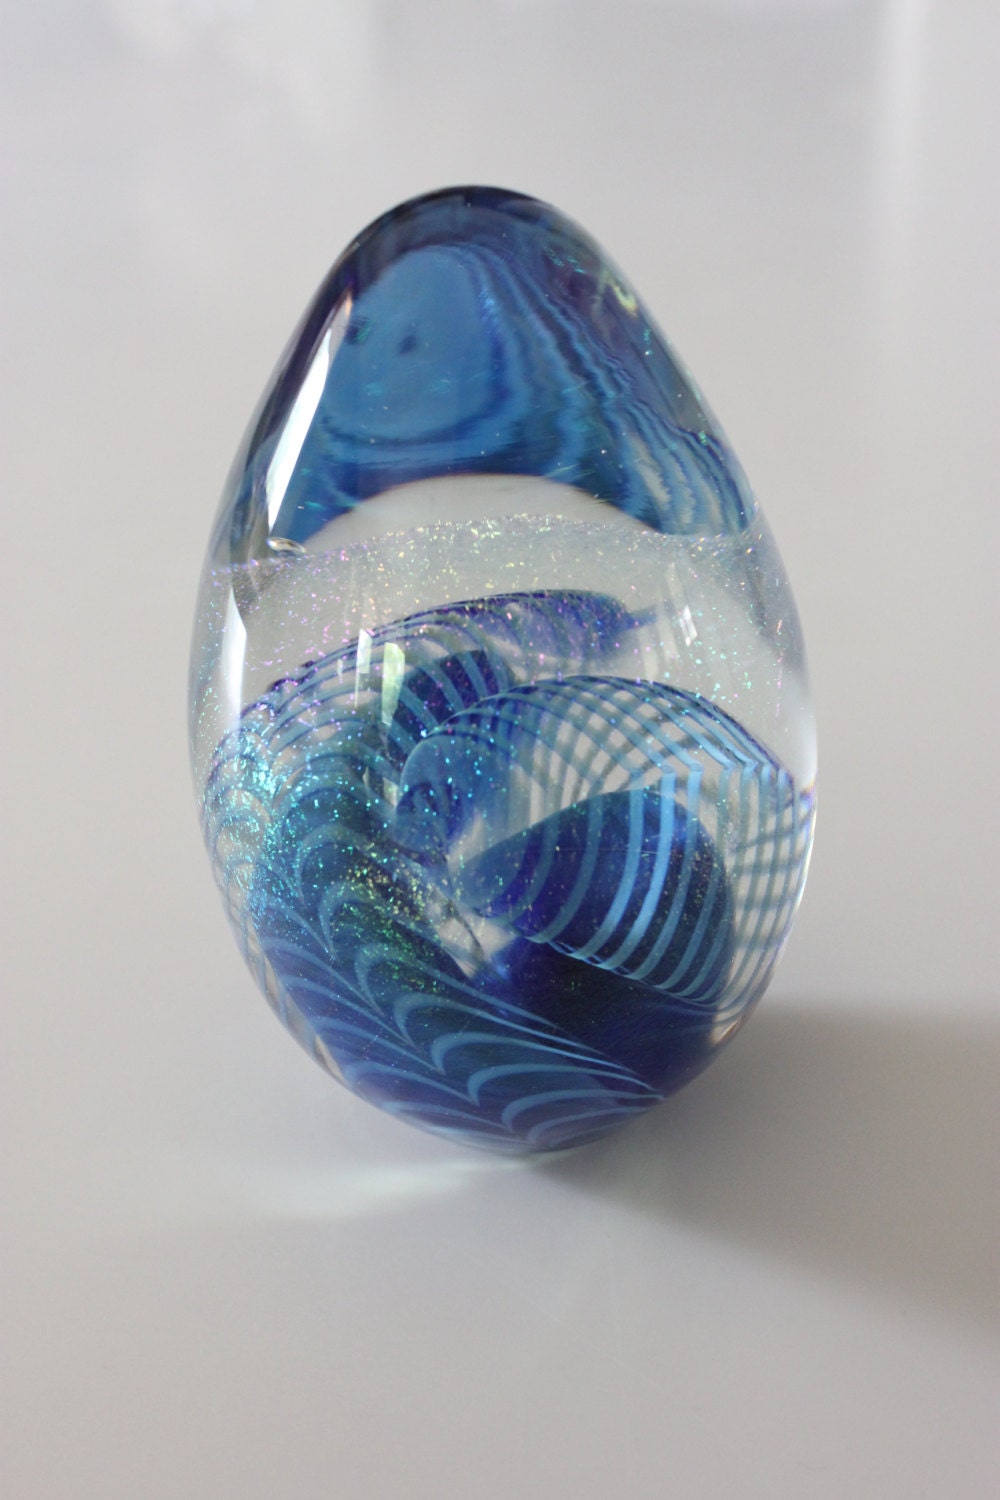 Vintage Robert Eickholt Art Glass Egg Paperweight